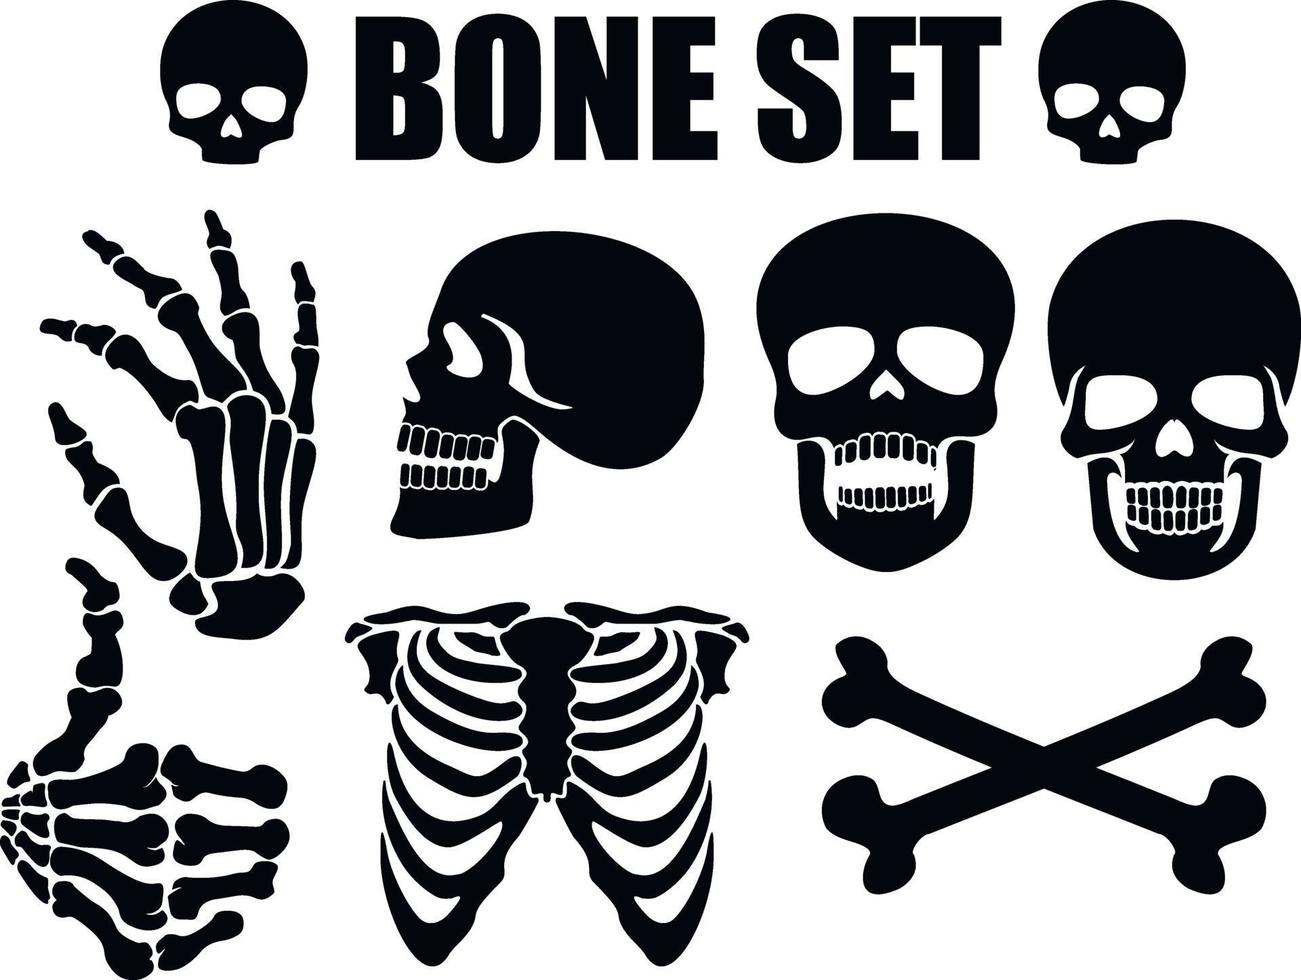 stencil set with bones vector